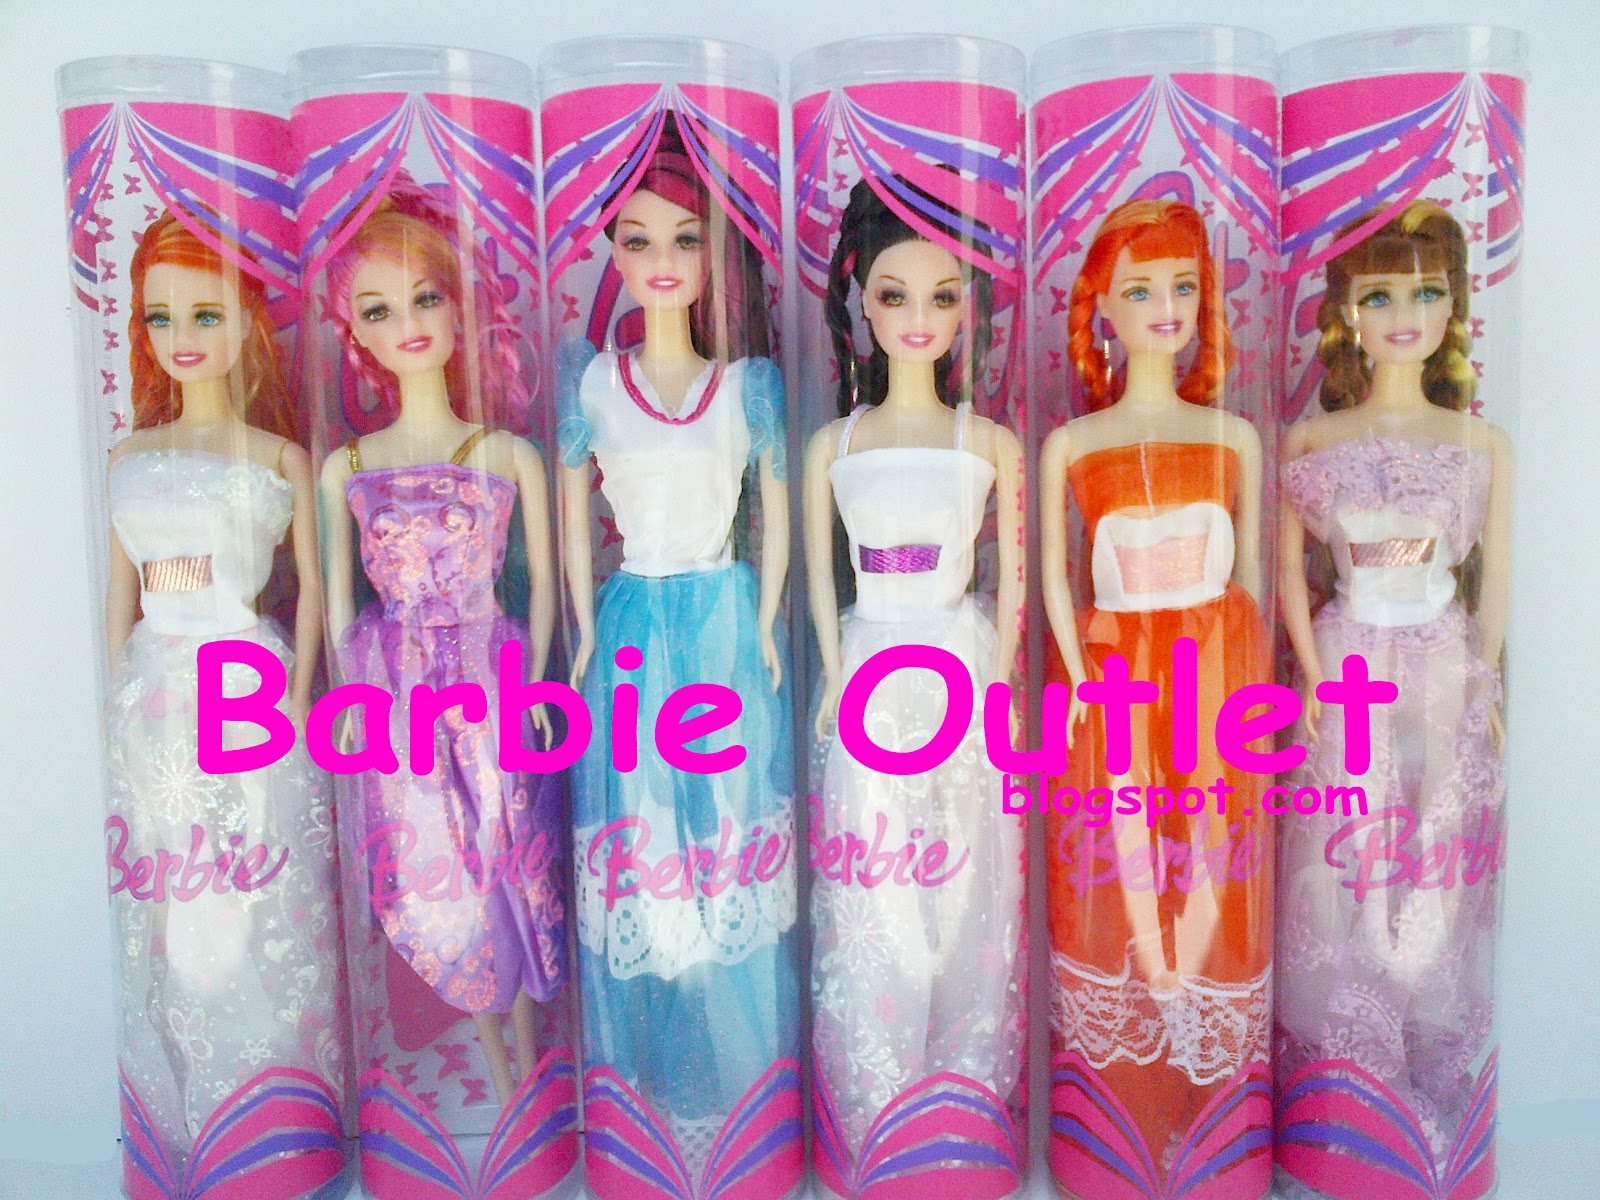 Barbie outlets: Jual Grosir Boneka Barbie dan Aksesoris 